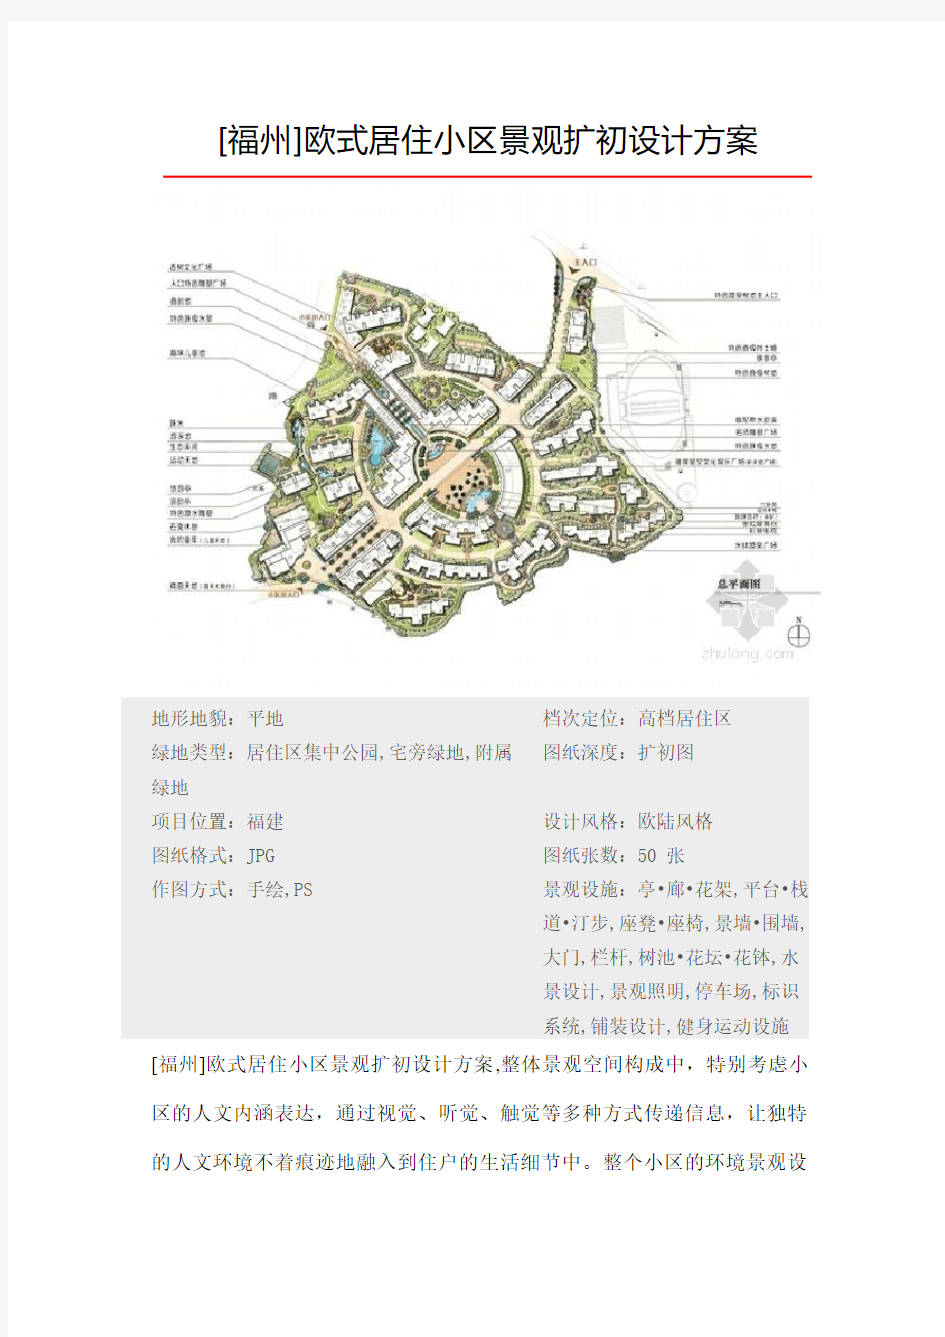 【精选】2013年住宅小区景观方案文本汇总